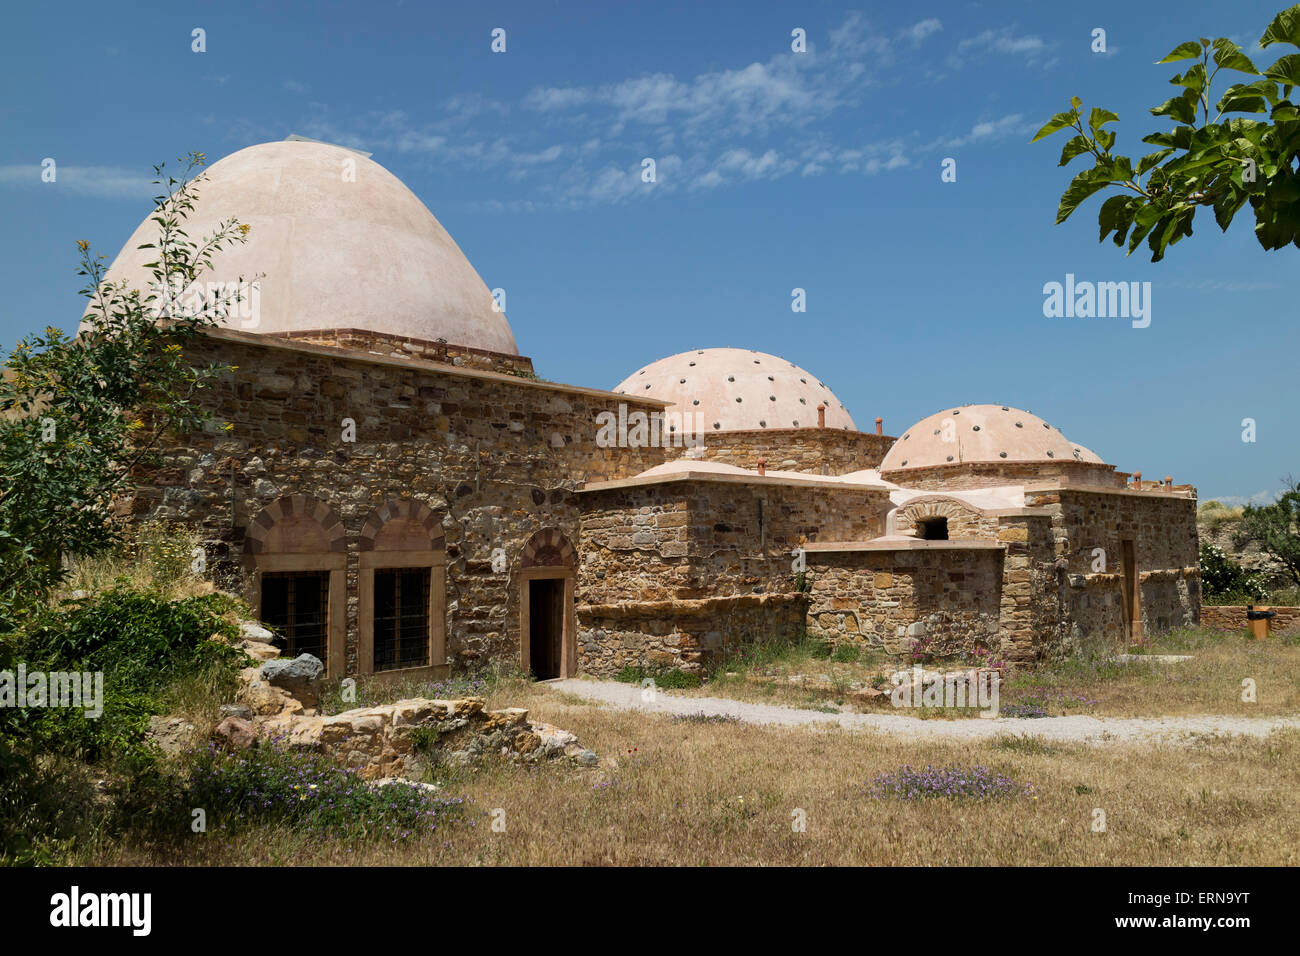 Hammam ottoman restauré dans la ville de Chios, à l'île de Chios, Grèce Banque D'Images